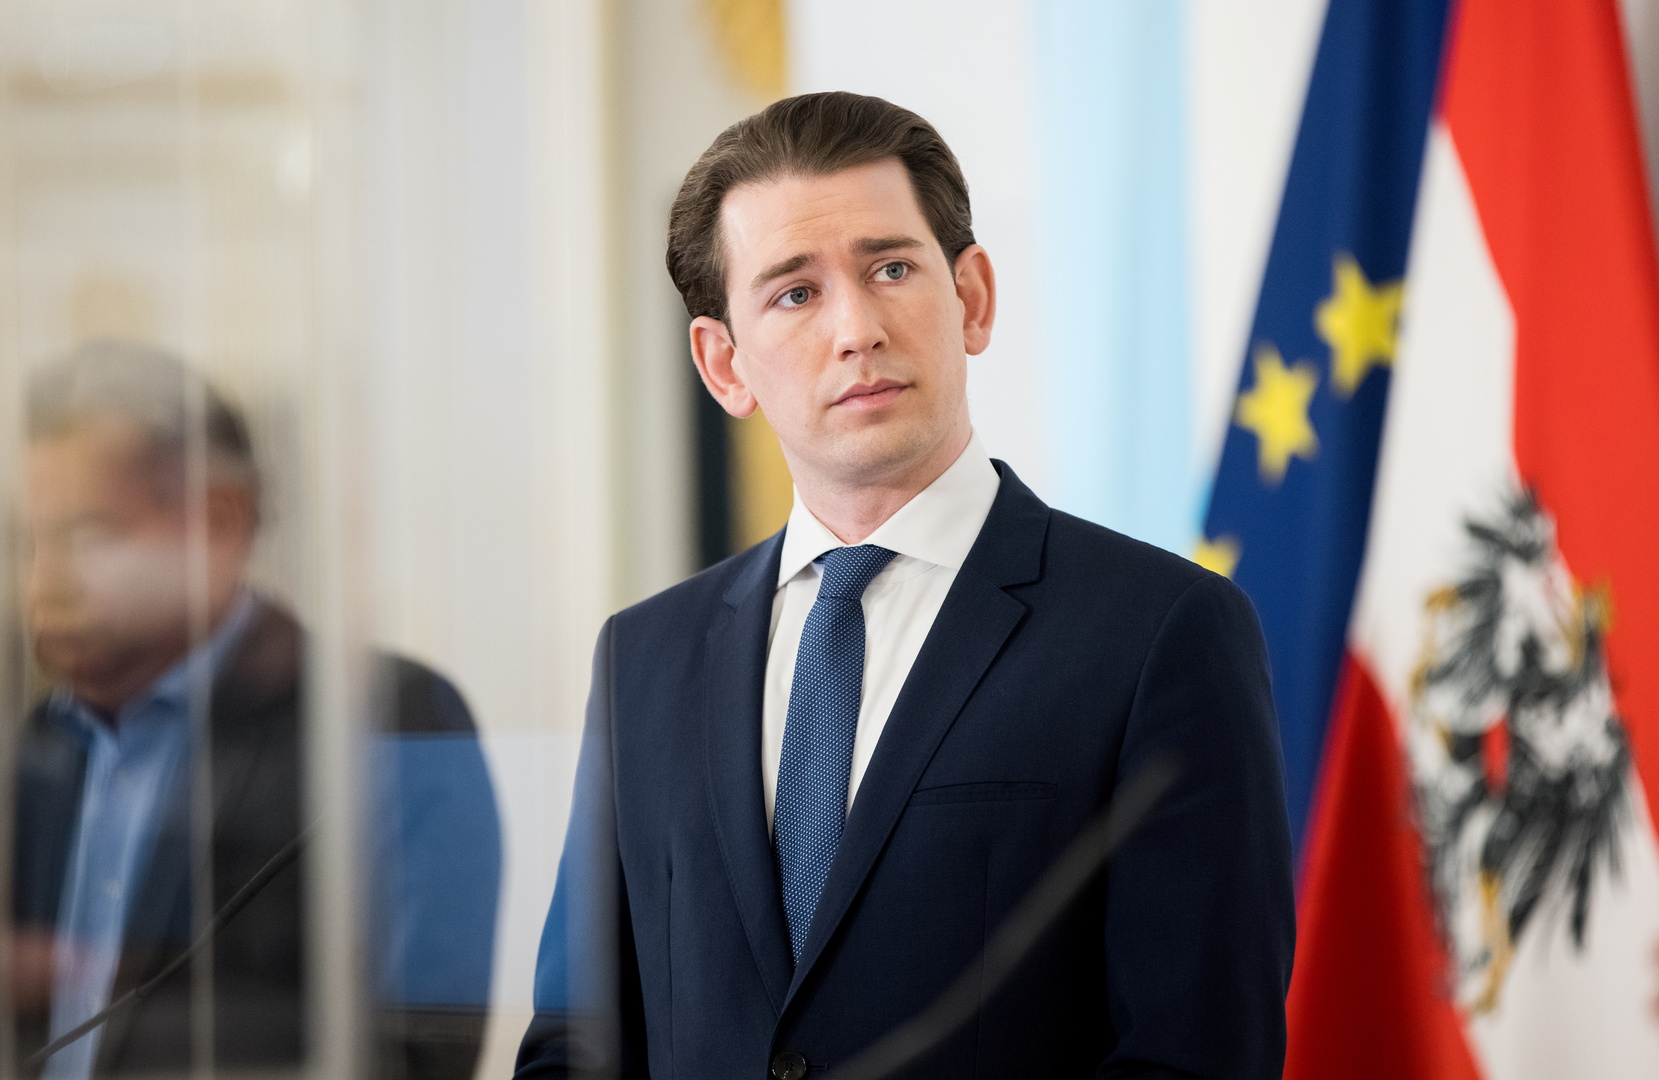 استقالة وزير الصحة النمساوي بسبب الإرهاق